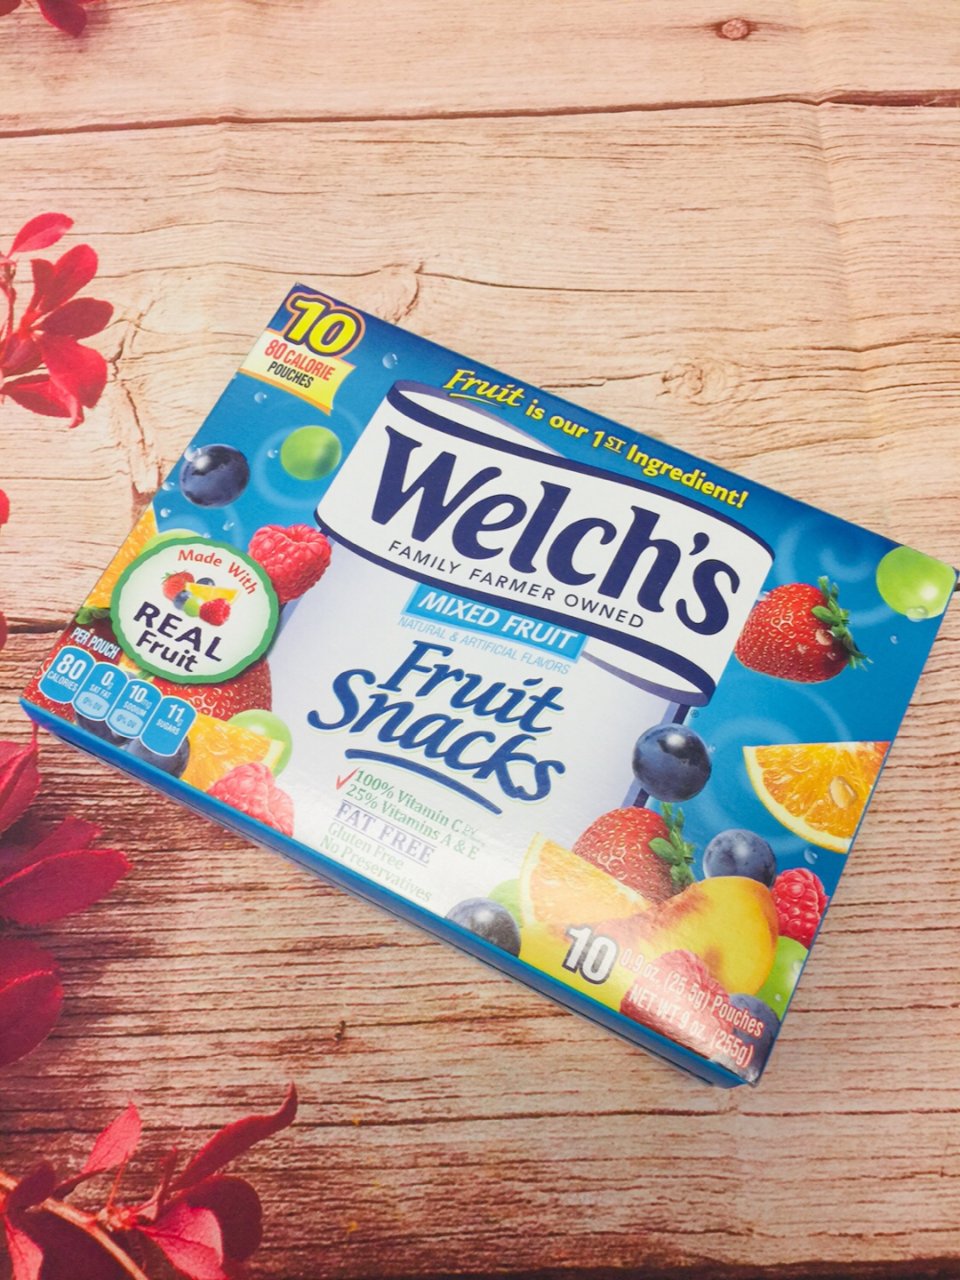 Welch's,Walmart 沃尔玛,水果糖